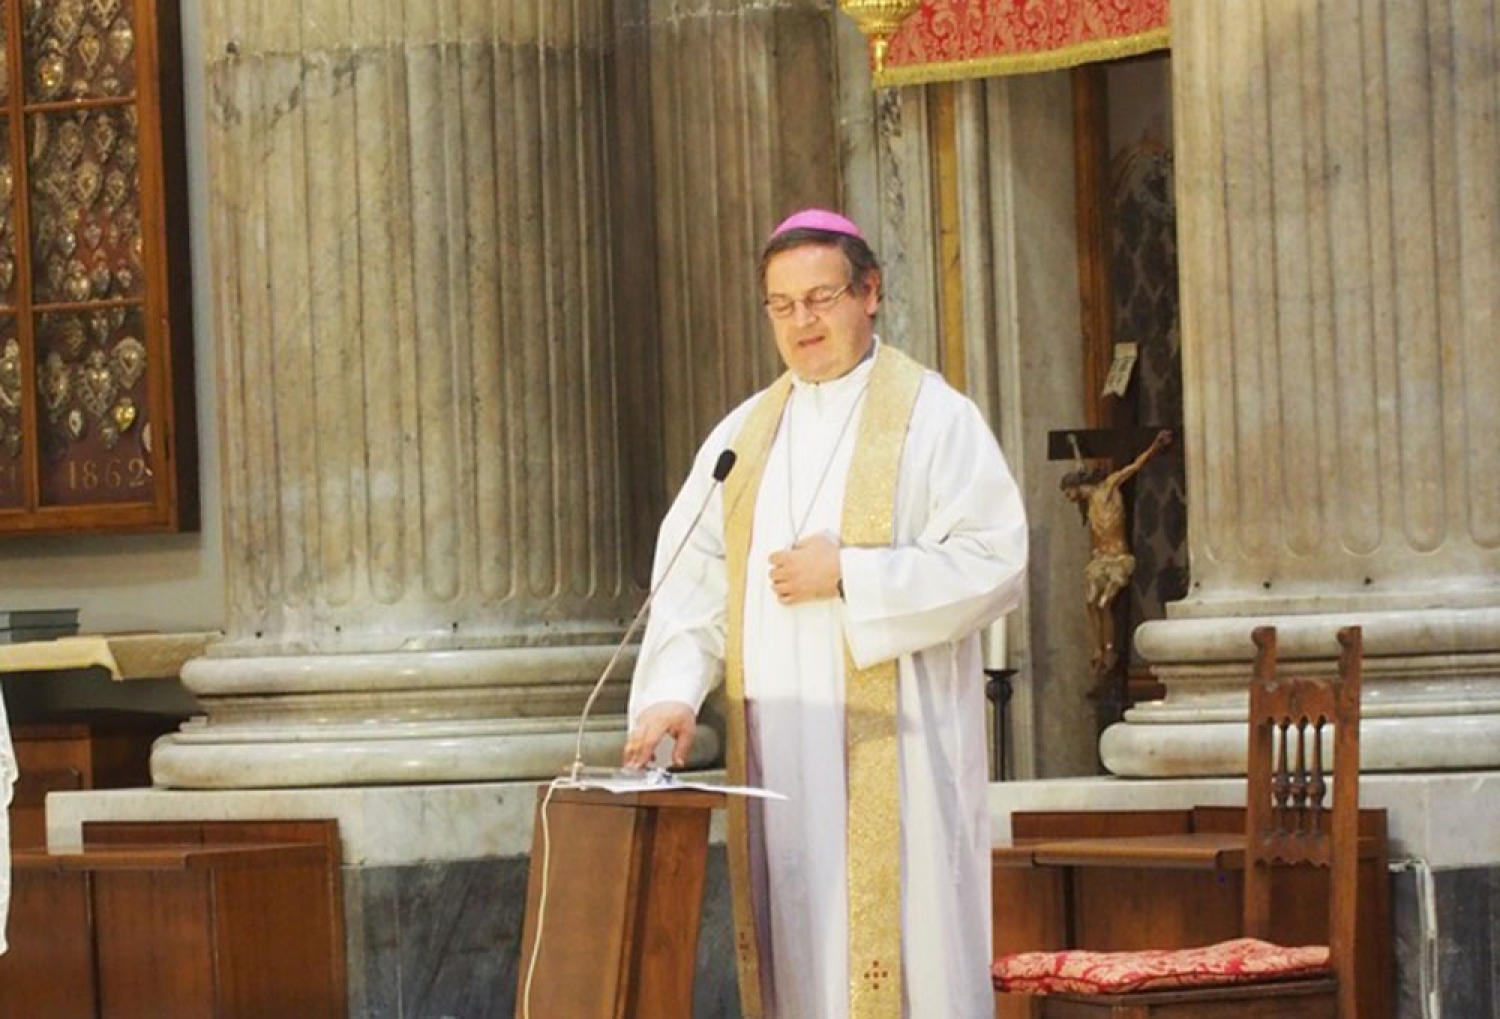 Il Vescovo Ricciardi: “Viviamo nell’attesa di Eucarestie vere e profonde”